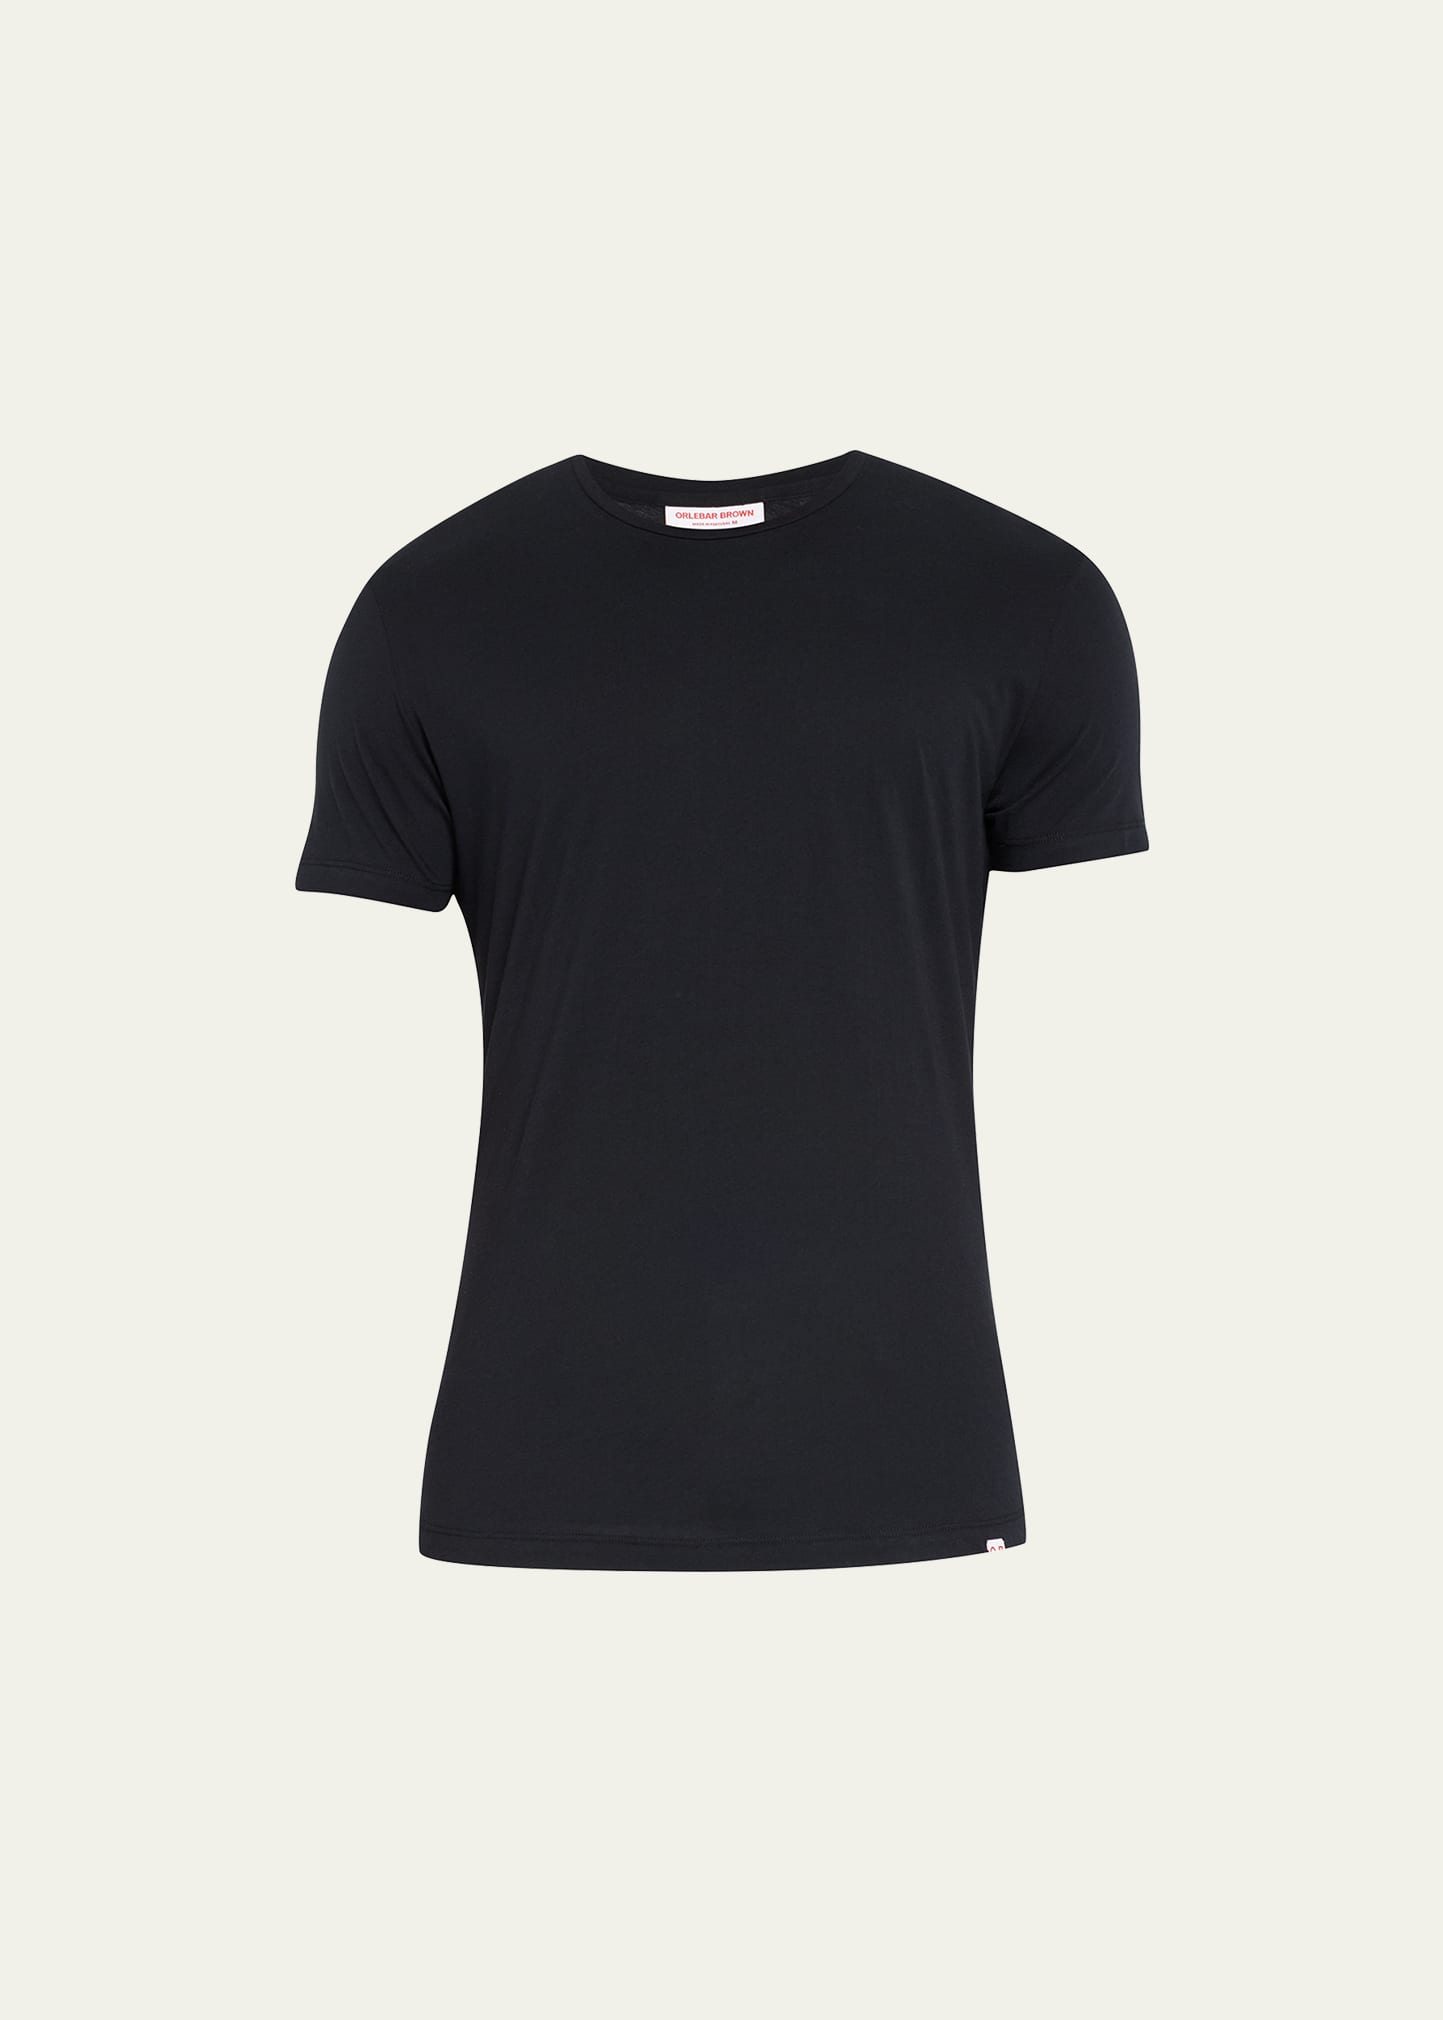 Shop Orlebar Brown Men's Basic Ob-t Crewneck T-shirt In Black